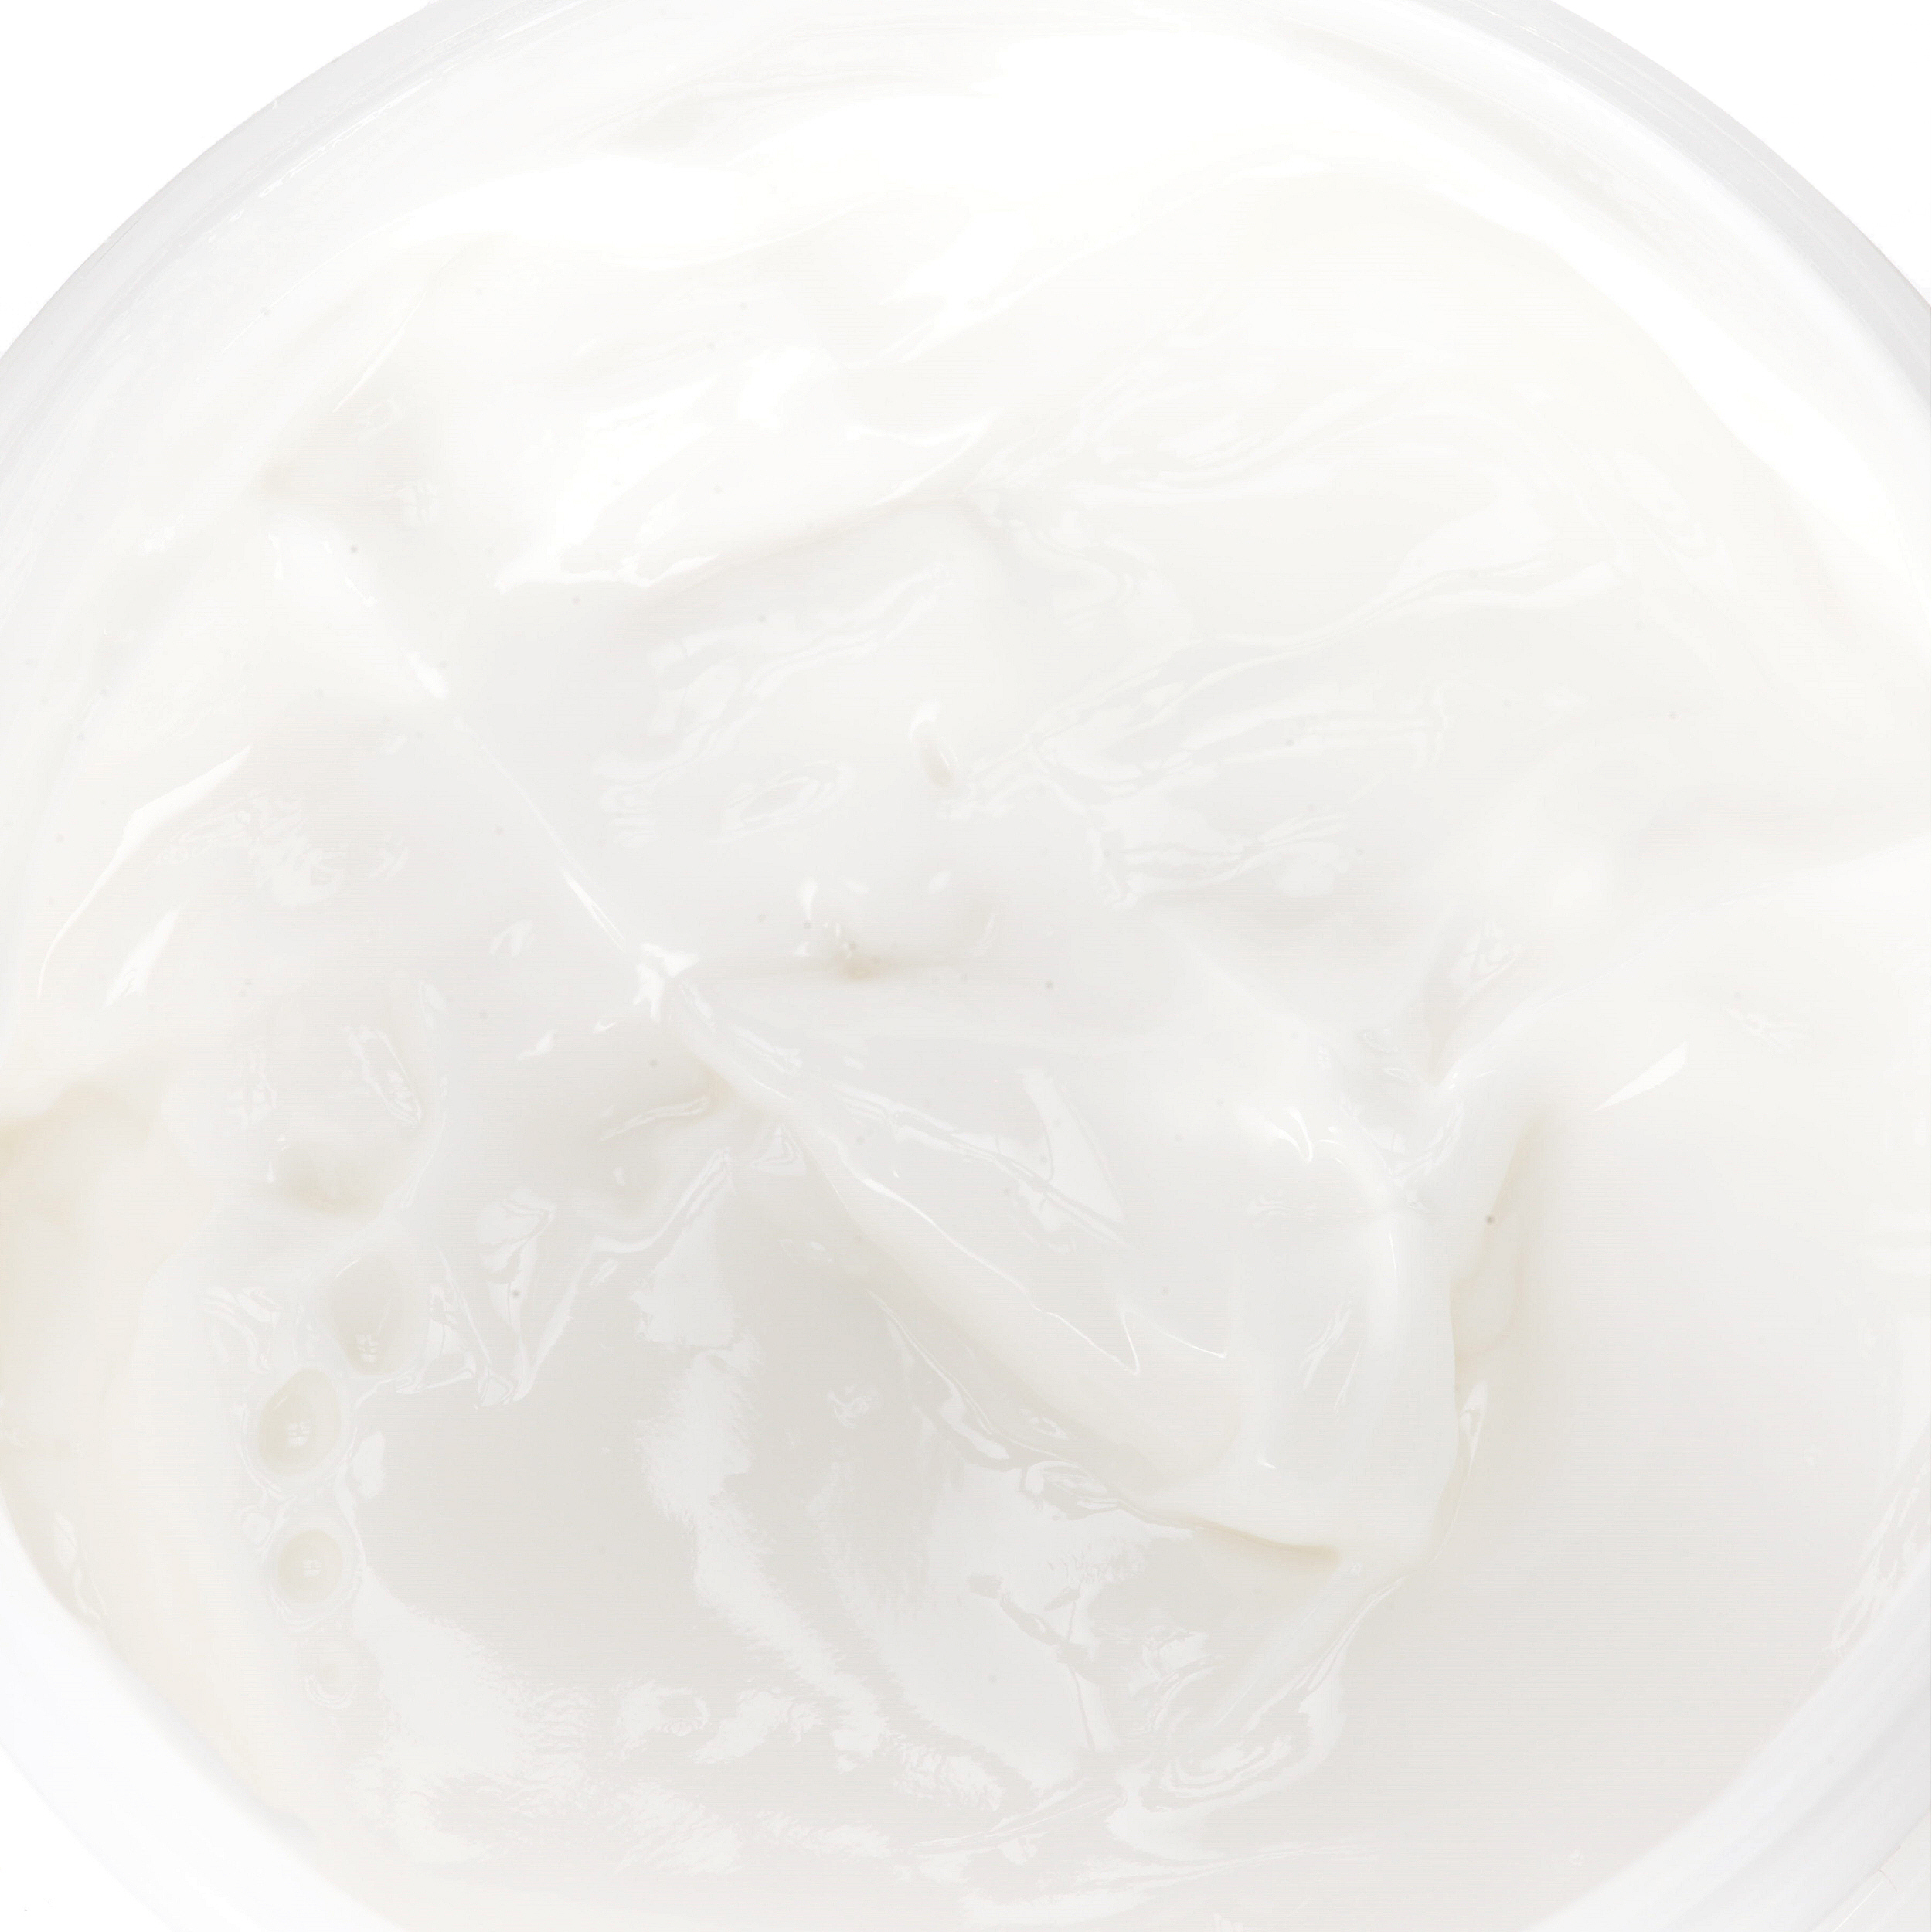 POND'S Dry Skin Cream Facial Moisturizer, 10.1 oz - image 4 of 8